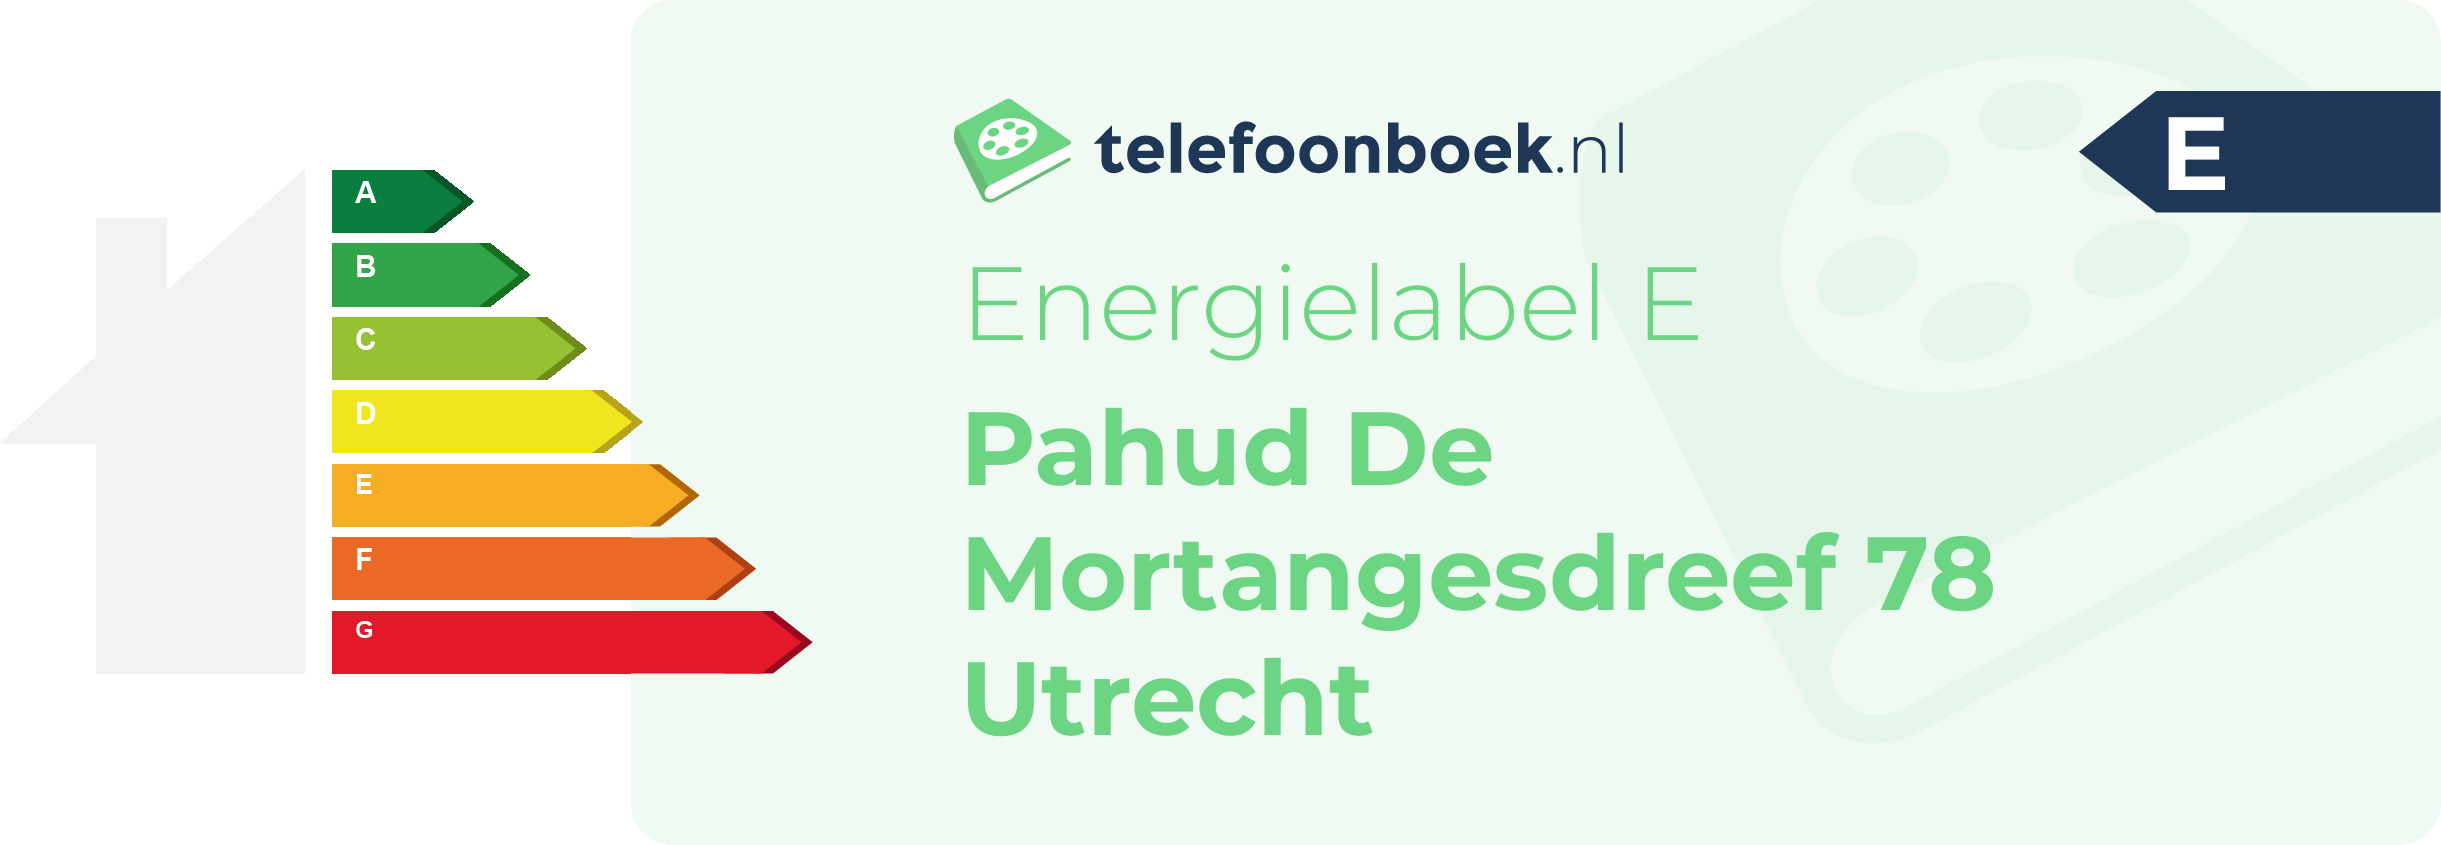 Energielabel Pahud De Mortangesdreef 78 Utrecht